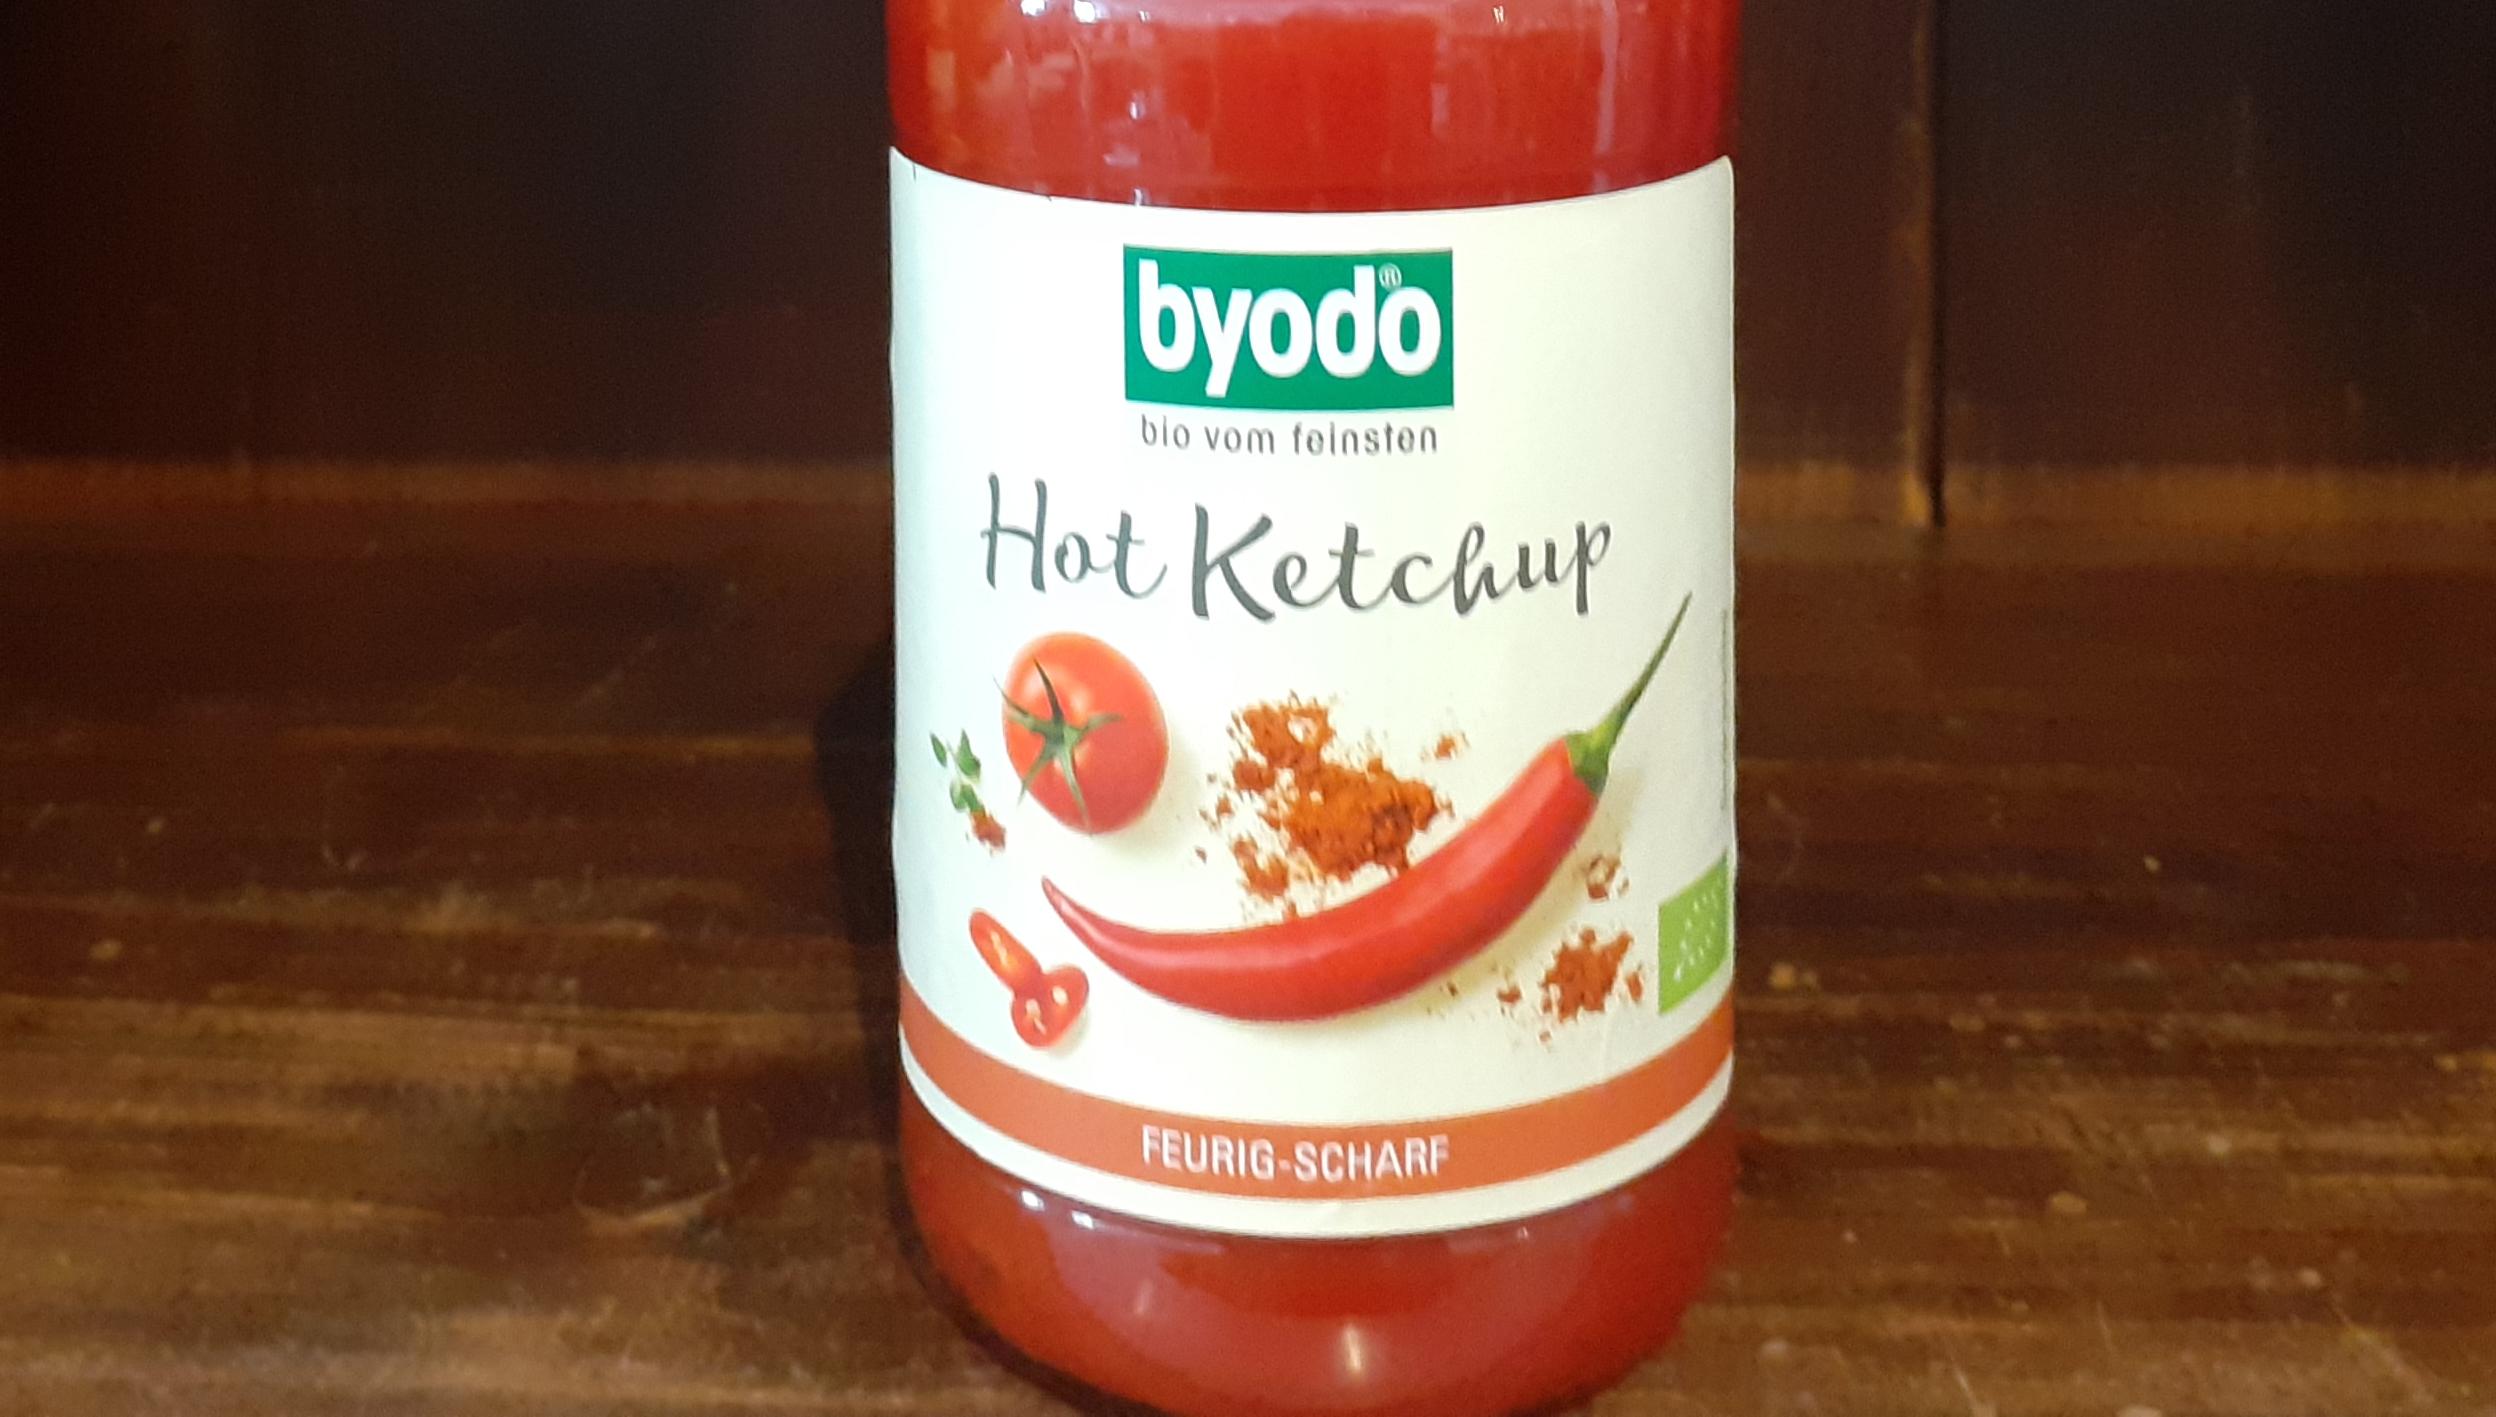 Hot Ketchup